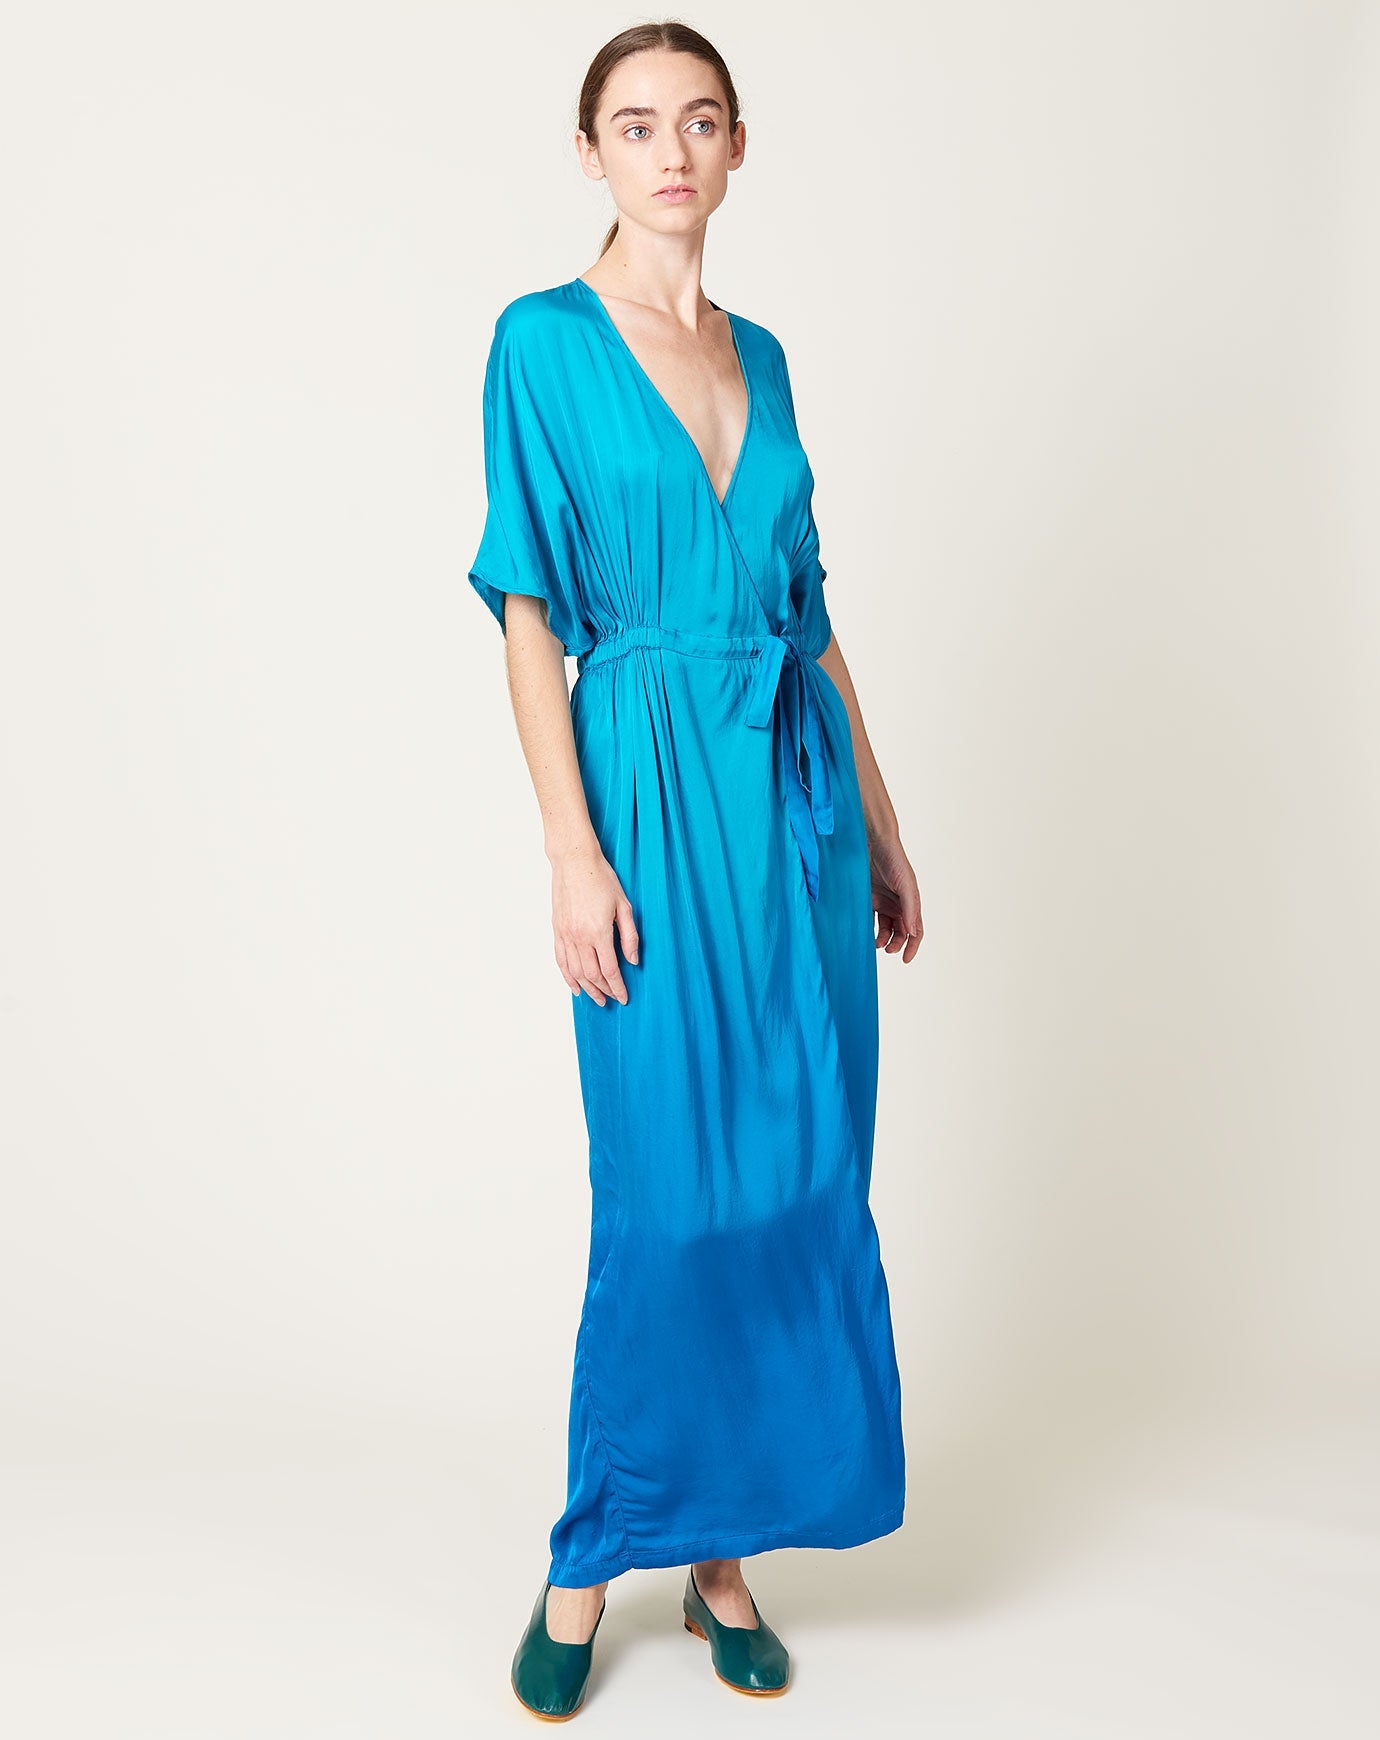 Diane Dress in Aqua Dip Dye | Raquel Allegra | Covet + Lou